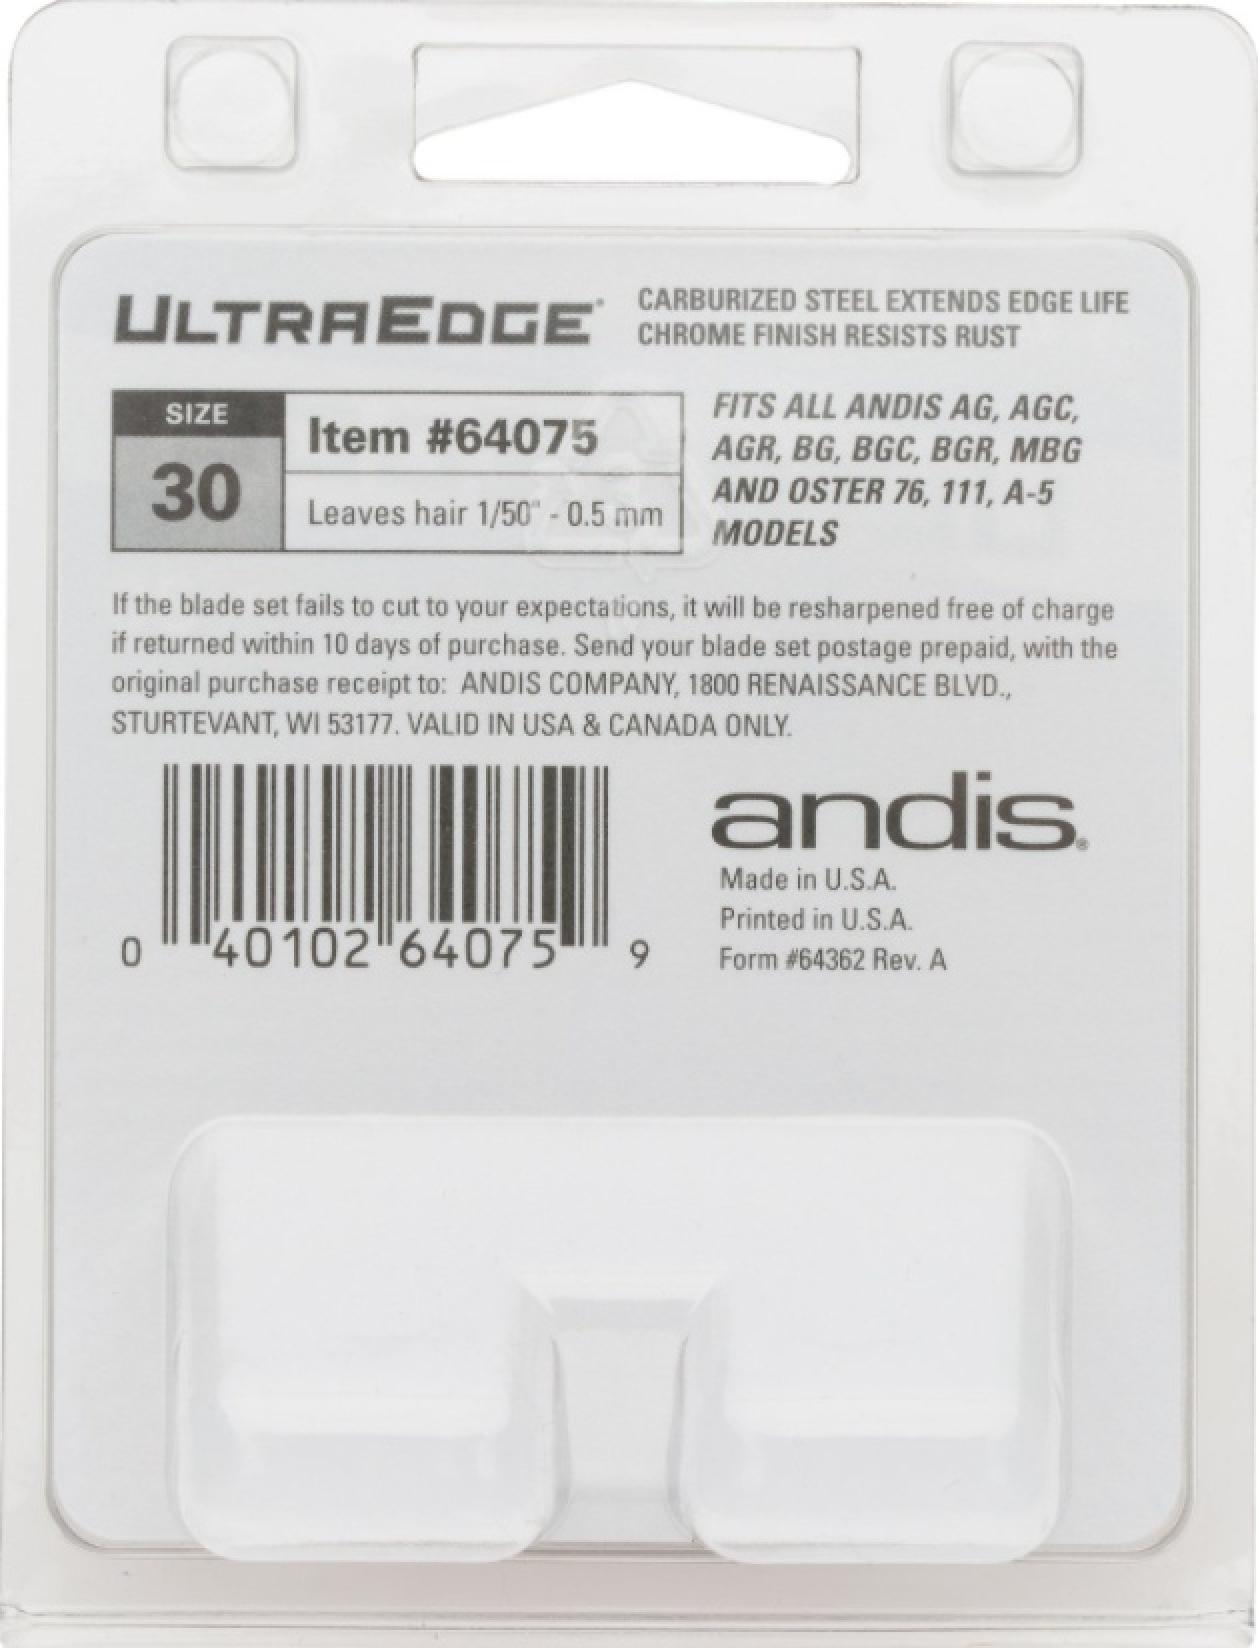 AAndis UltraEdge Detachable Blade #30 Back of Package